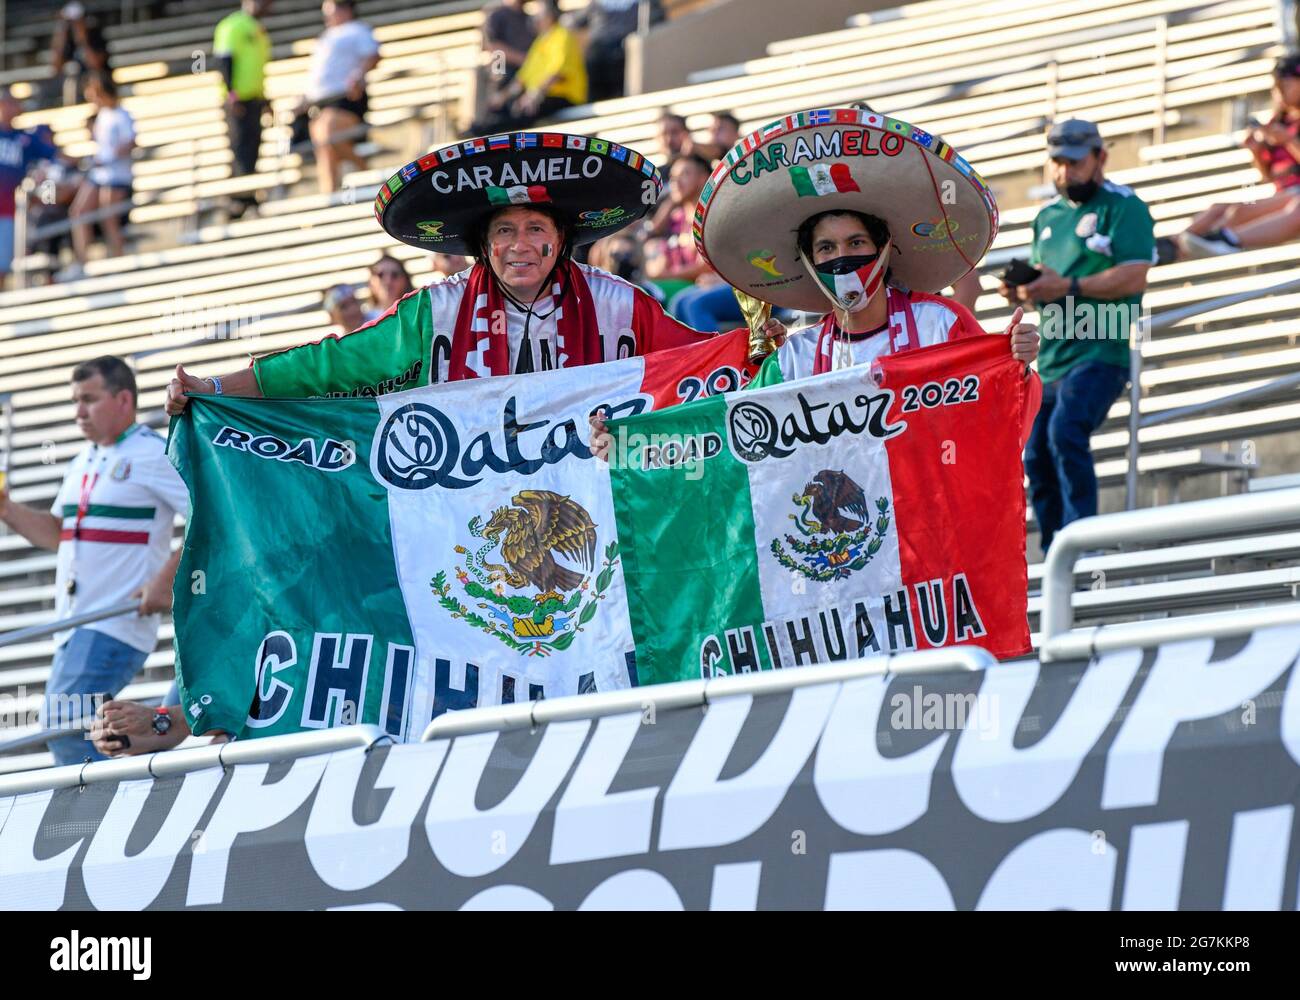 14 luglio 2021: I tifosi del Messico si vestono e visualizzano bandiere durante una partita della CONCACAF Gold Cup tra Messico e Guatemala al Cotton Bowl Stadium di Dallas, Texas il Messico ha sconfitto il Guatemala 3-0 Albert pena/CSM Foto Stock